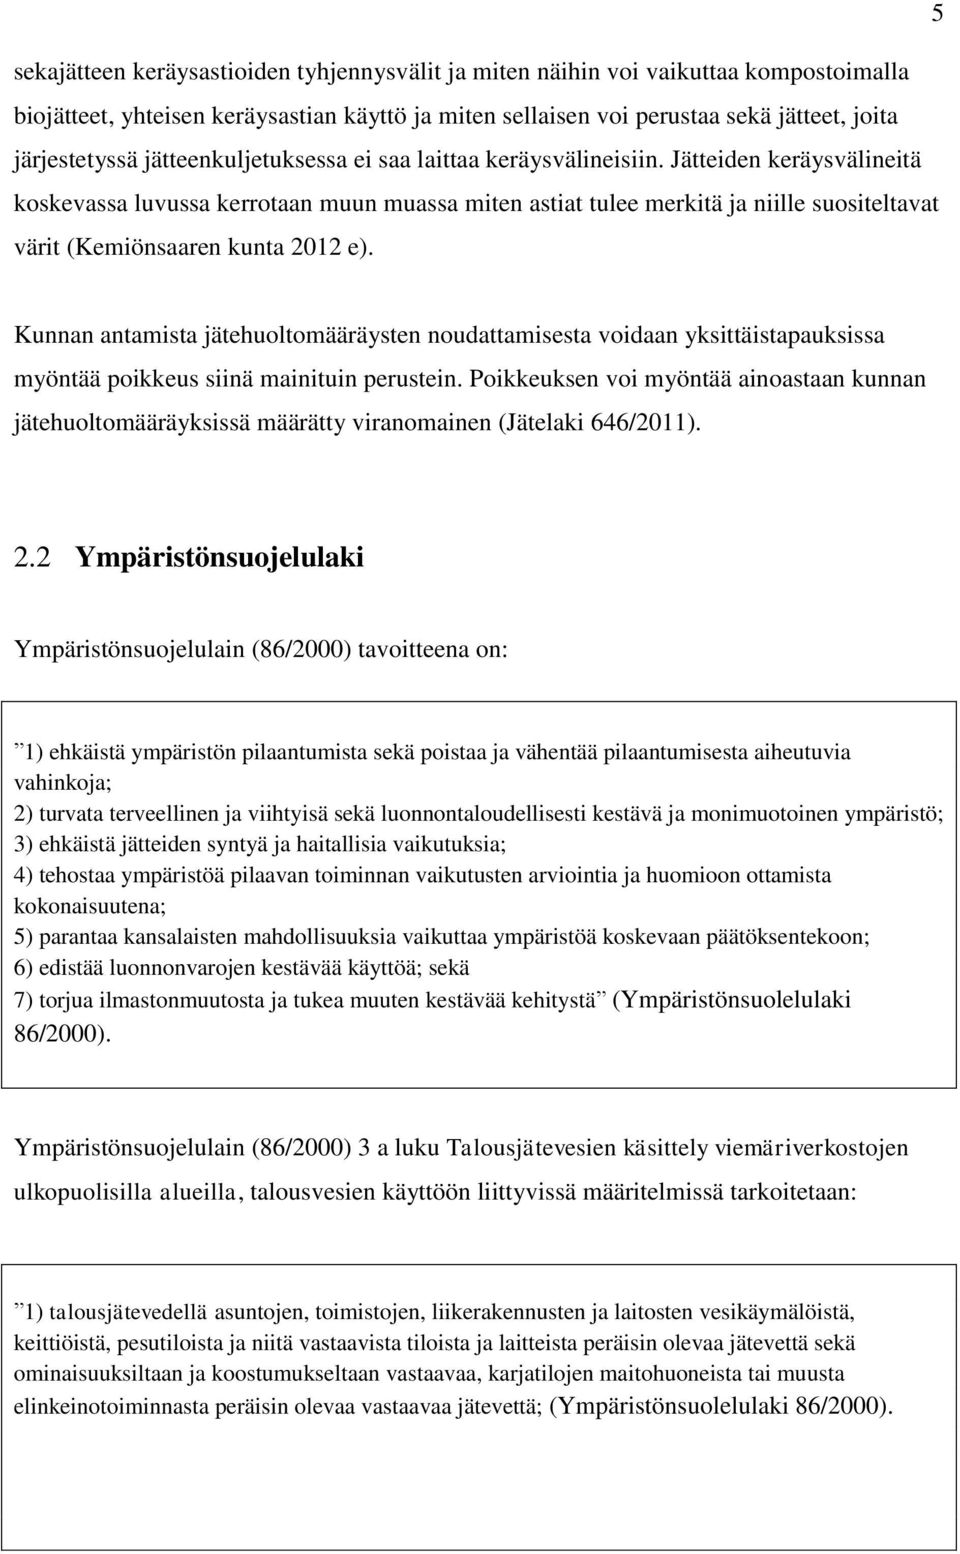 Jätteiden keräysvälineitä koskevassa luvussa kerrotaan muun muassa miten astiat tulee merkitä ja niille suositeltavat värit (Kemiönsaaren kunta 2012 e).